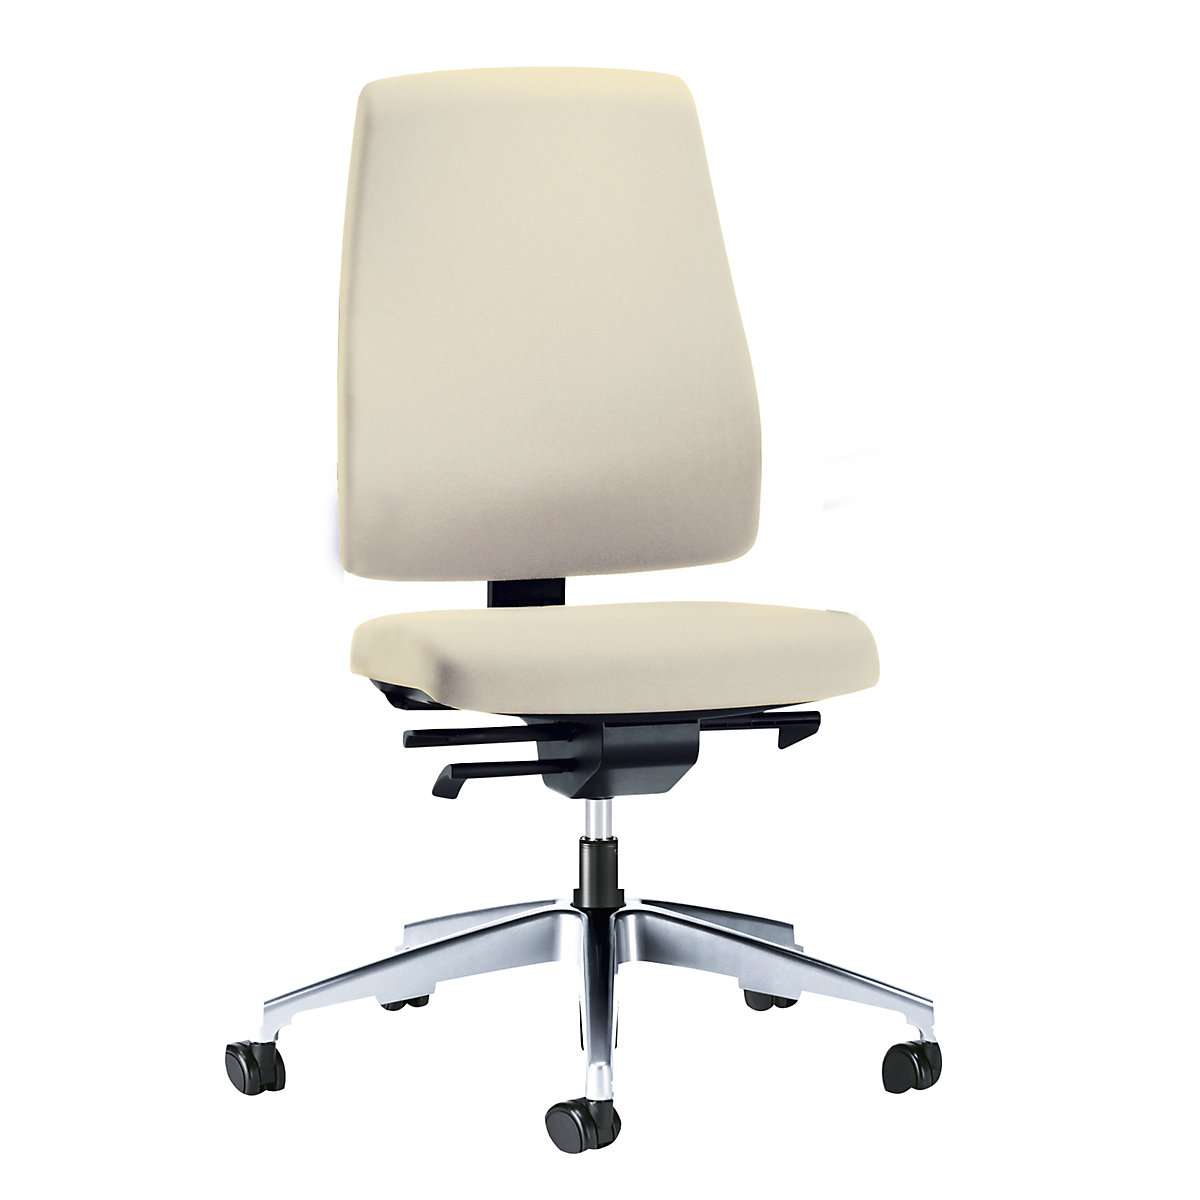 Bürodrehstuhl GOAL, Rückenlehnenhöhe 530 mm interstuhl, Gestell poliert, mit harten Rollen, beige, Sitztiefe 410 mm-3